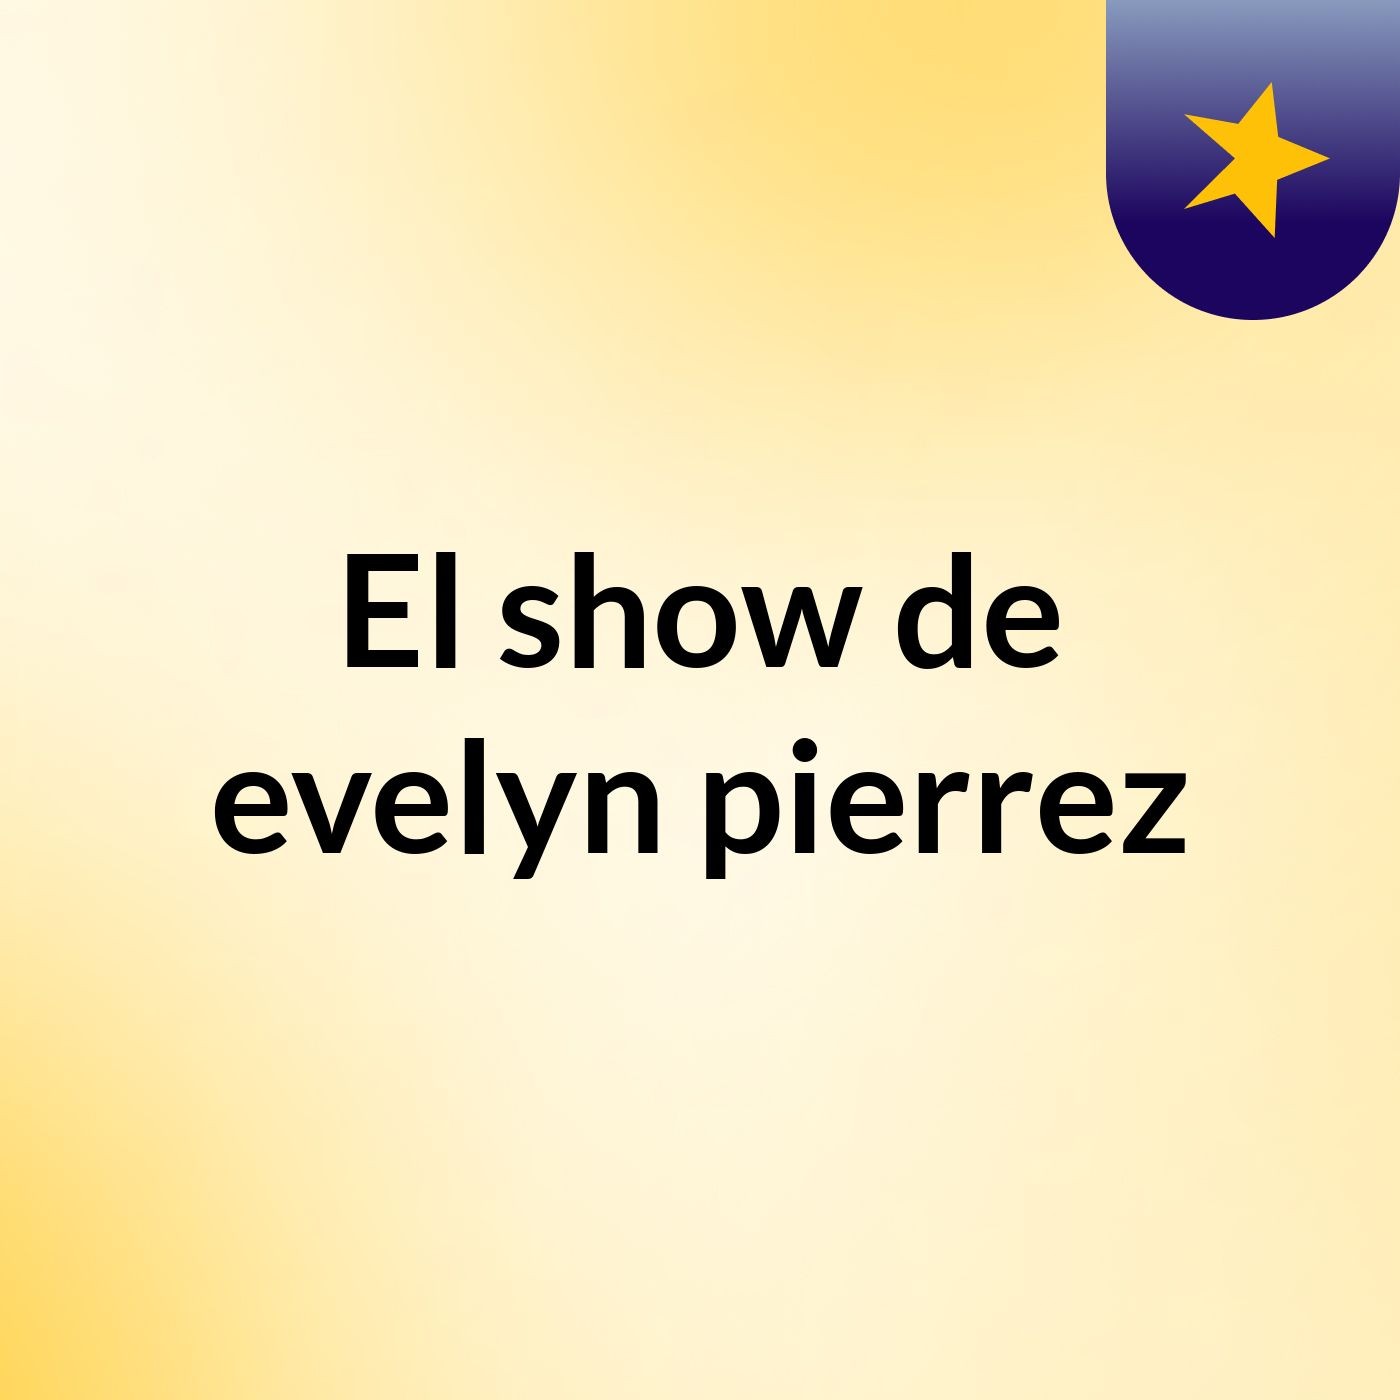 El show de evelyn pierrez